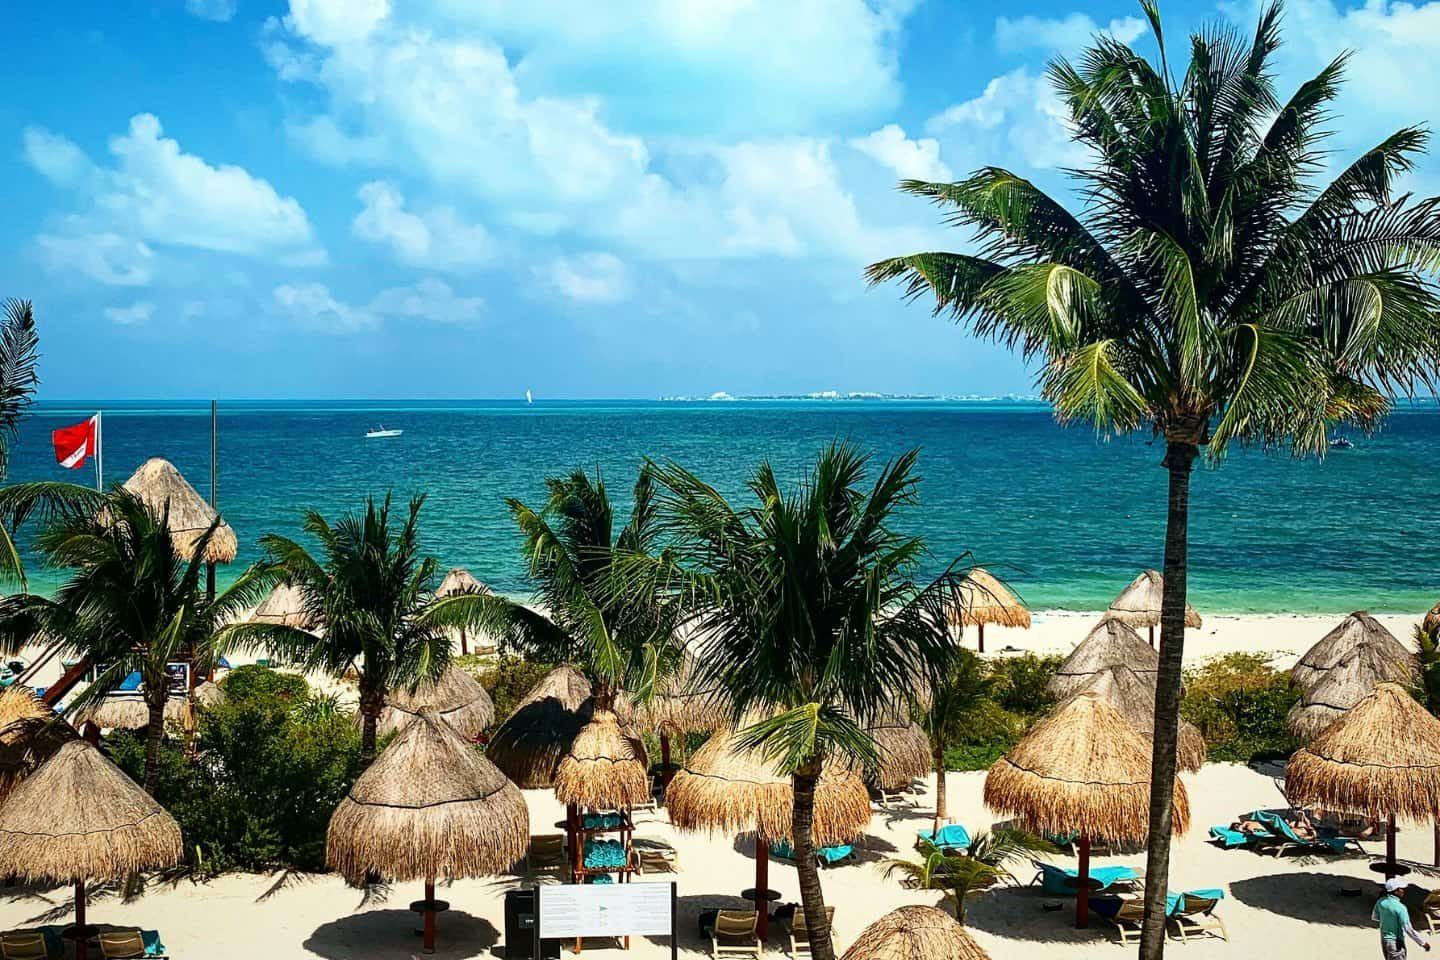 A beautiful resort in Isla Mujeres